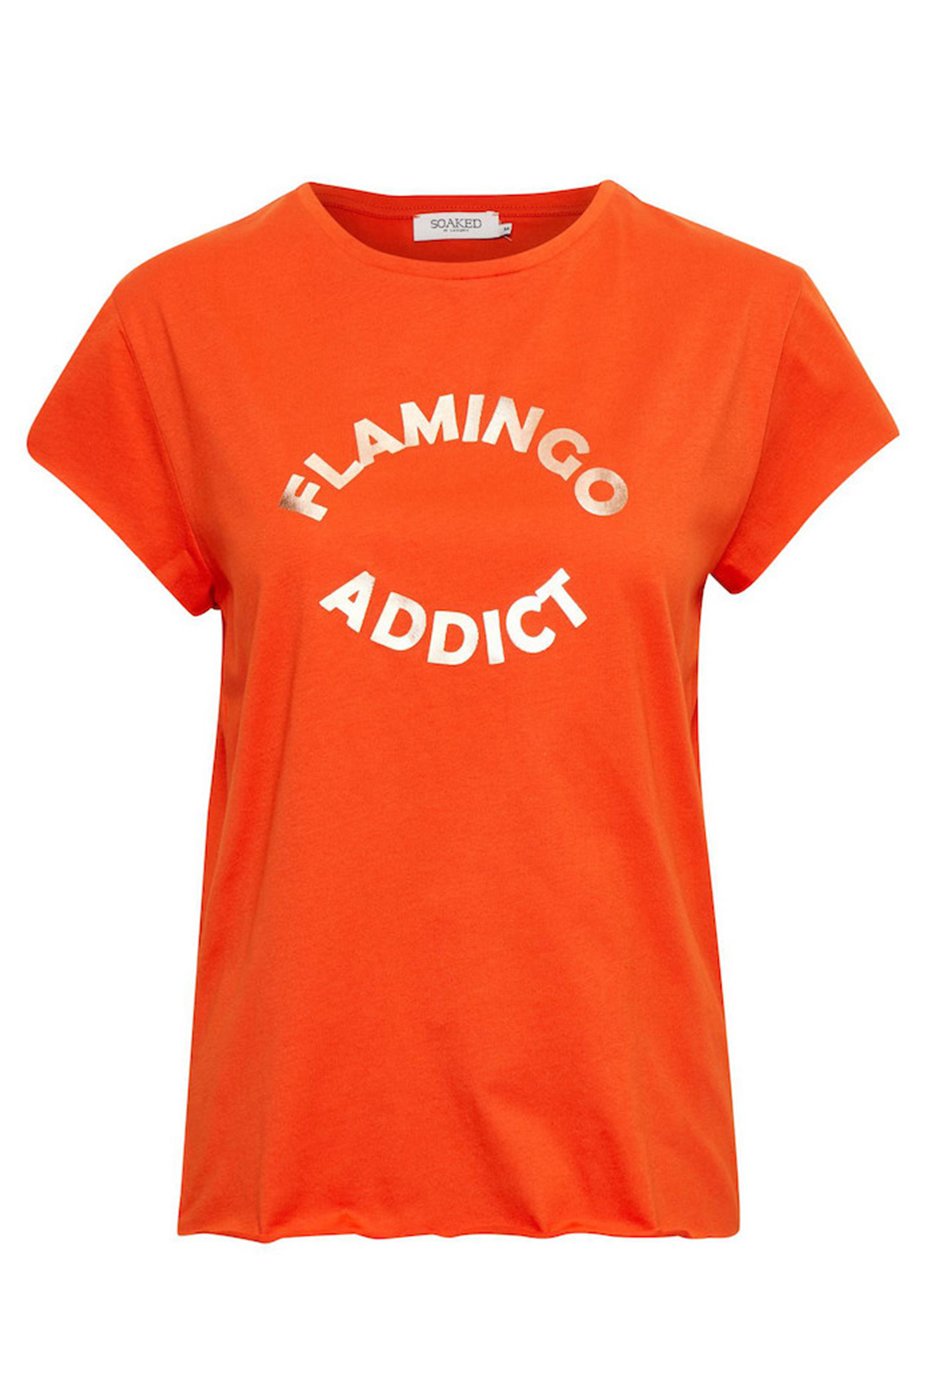 Sadie Top Orange Soaked In Luxury - Product - Sienna Goodies